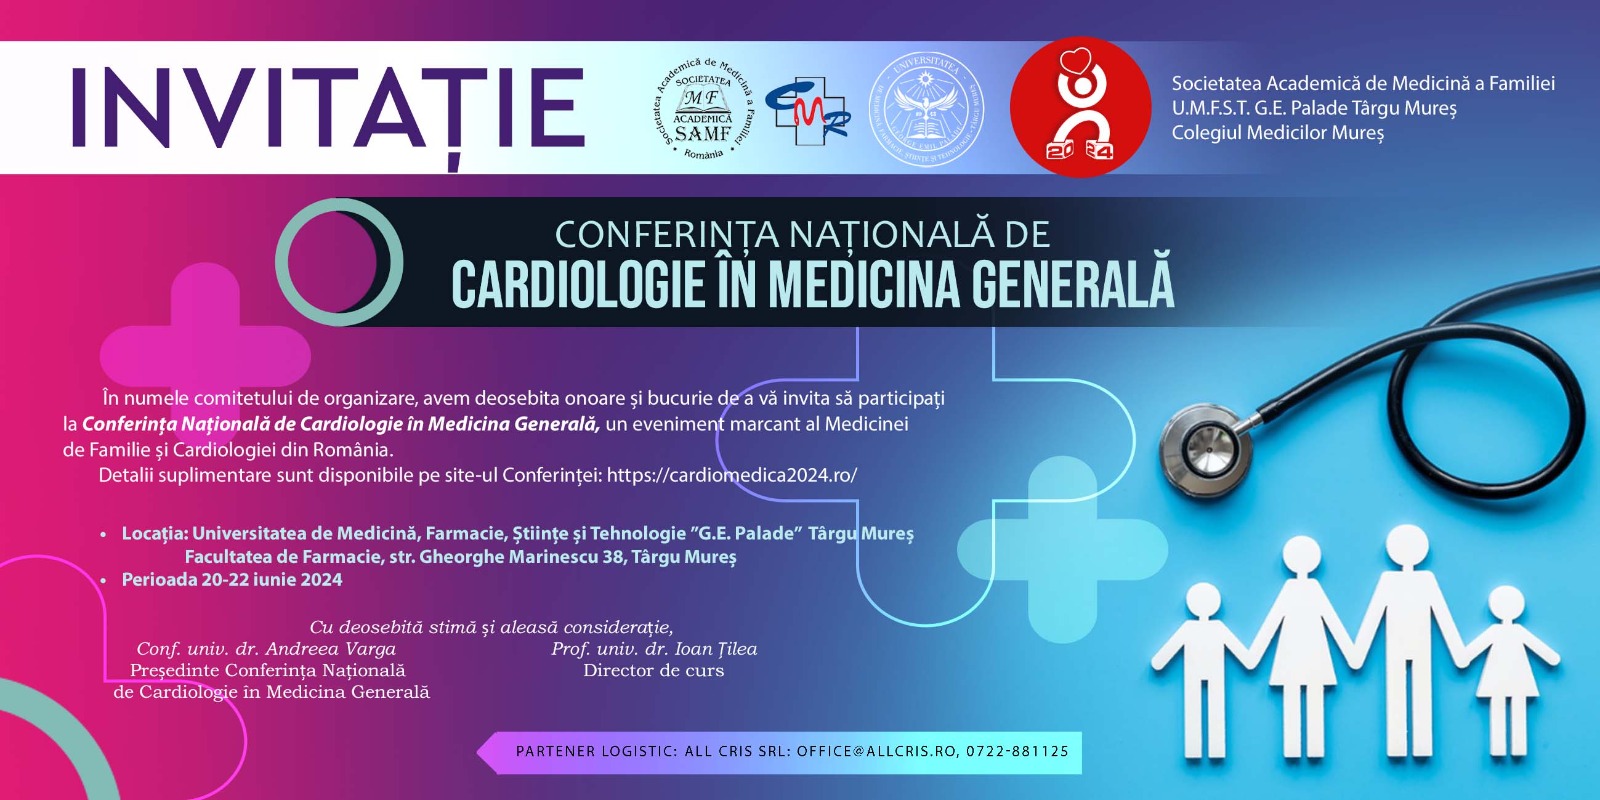 Invitație la Conferința Națională de Cardiologie în Medicina Generală, ediția a 19-a, 20-22 iunie Târgu Mureș